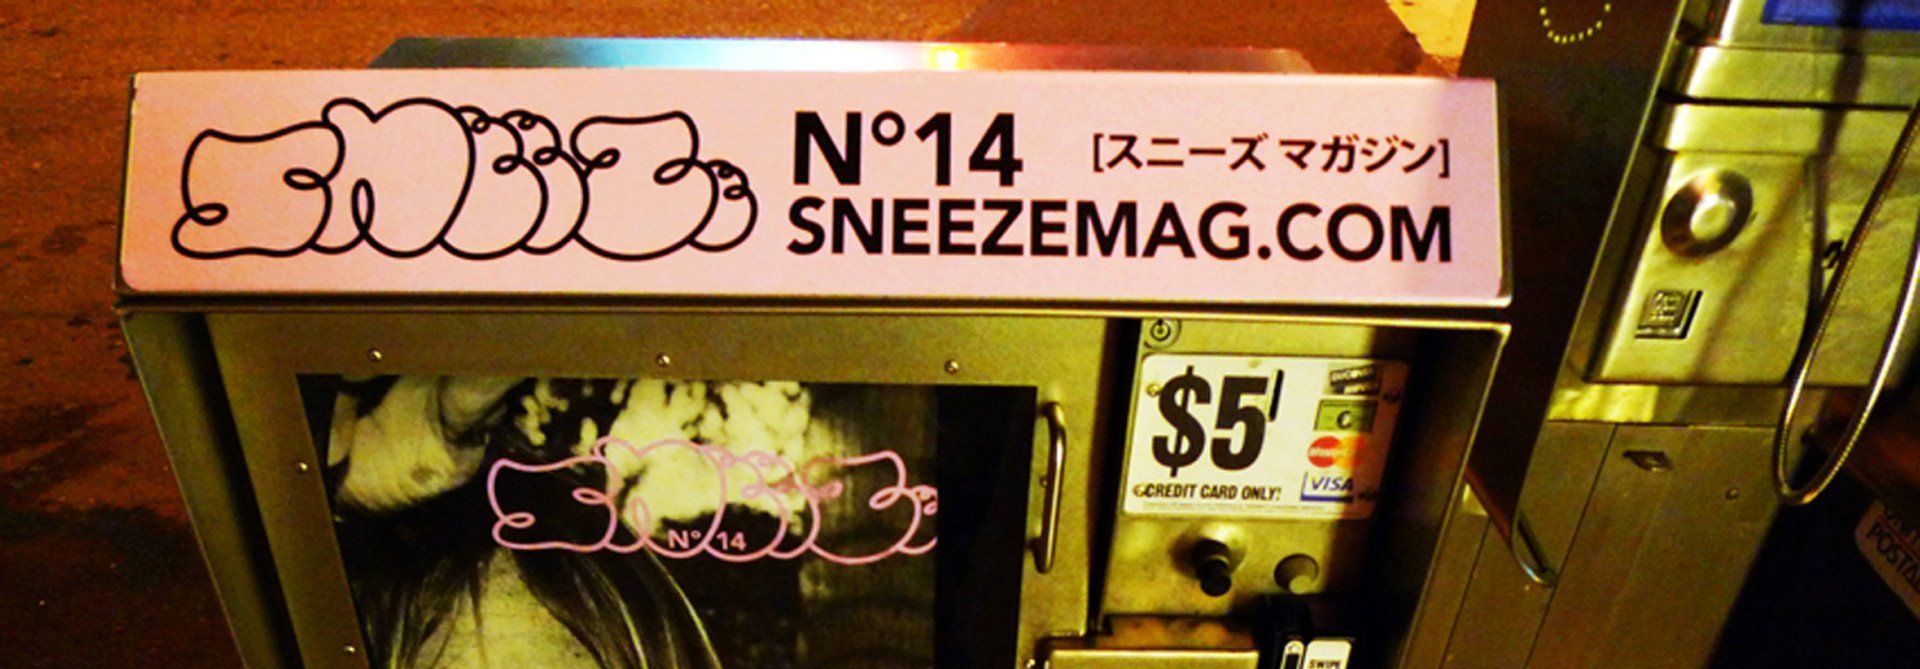 Sneeze Magazine